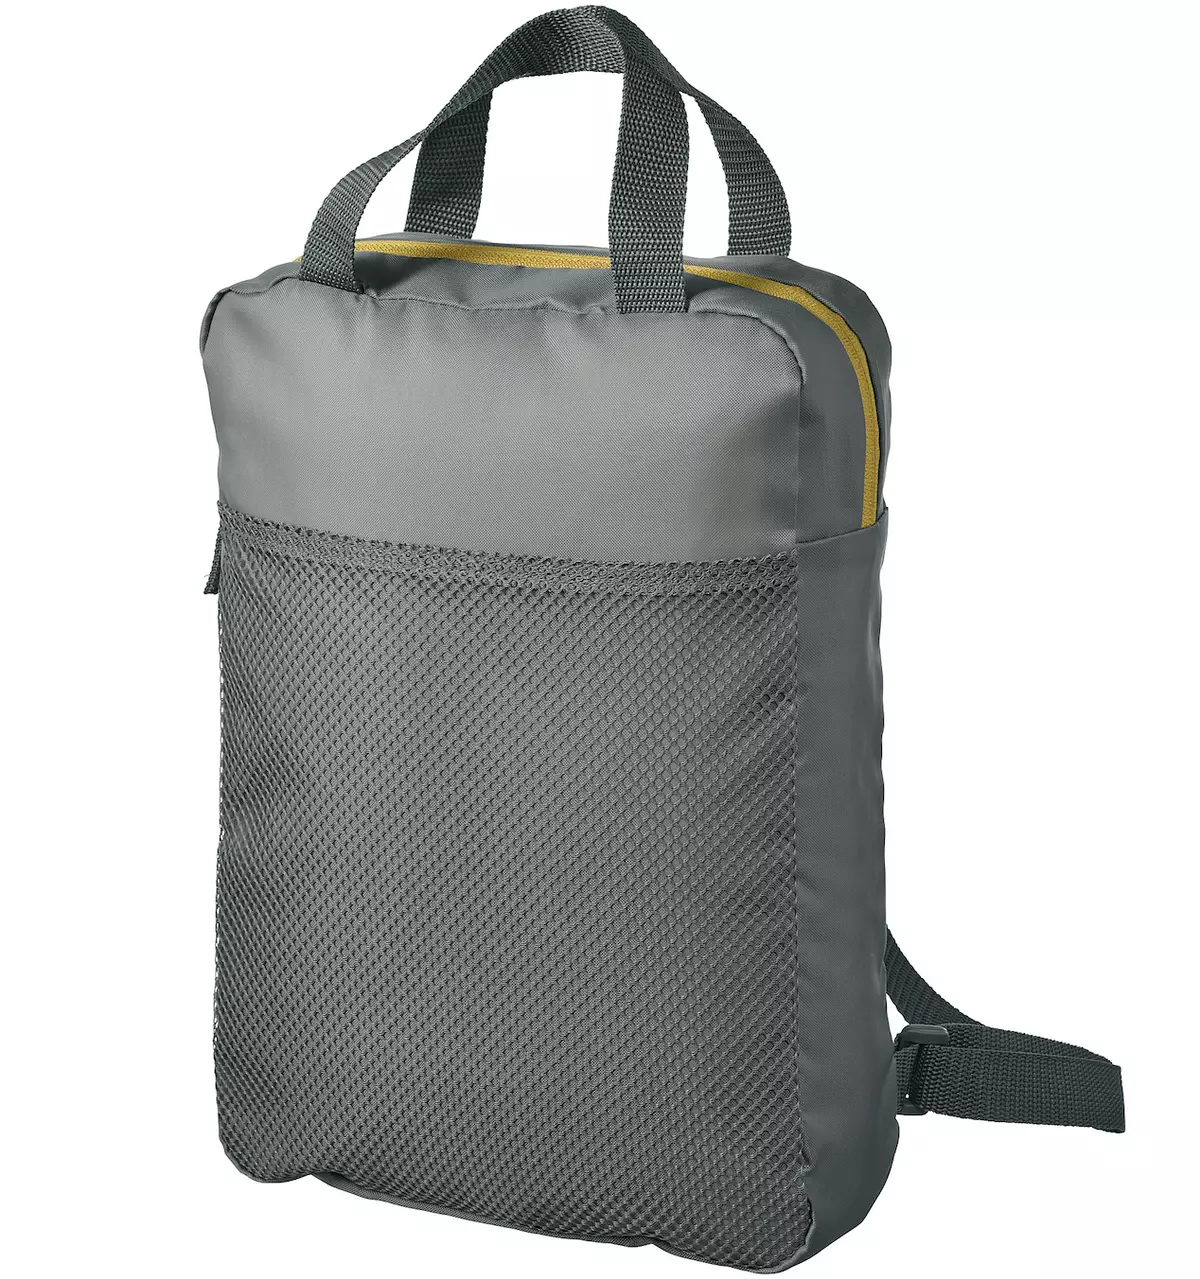 Backpacks Ikea: Ny fijerena ny valizy mainty-kitapo mainty sy ny modely hafa, ny fomba hikarakarana azy 15421_22